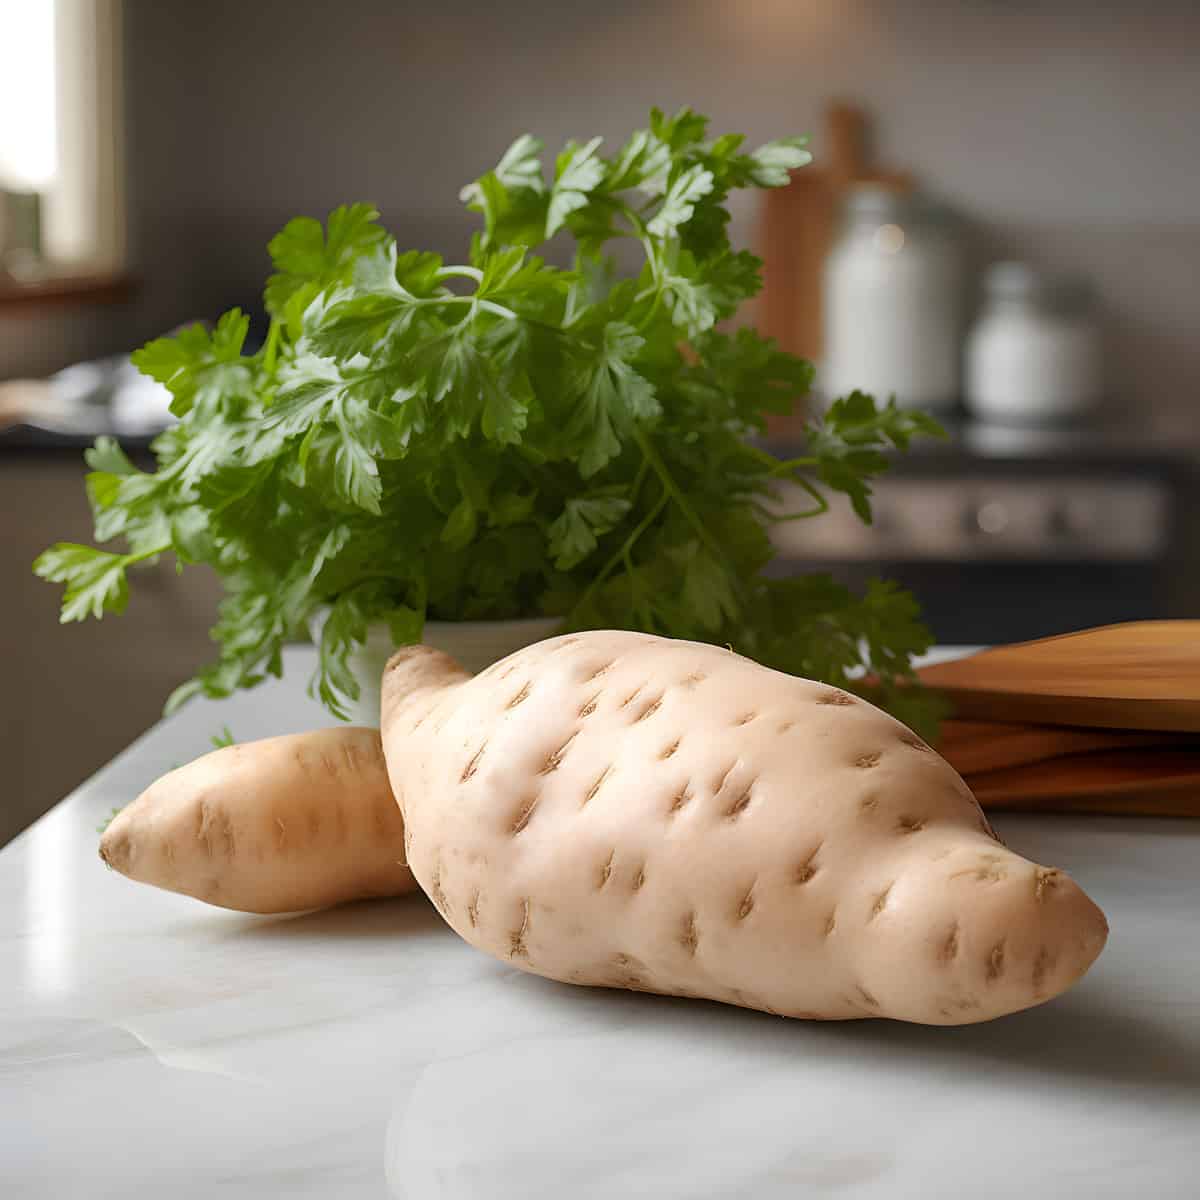 Hutihuti Sweet Potatoes on a kitchen counter